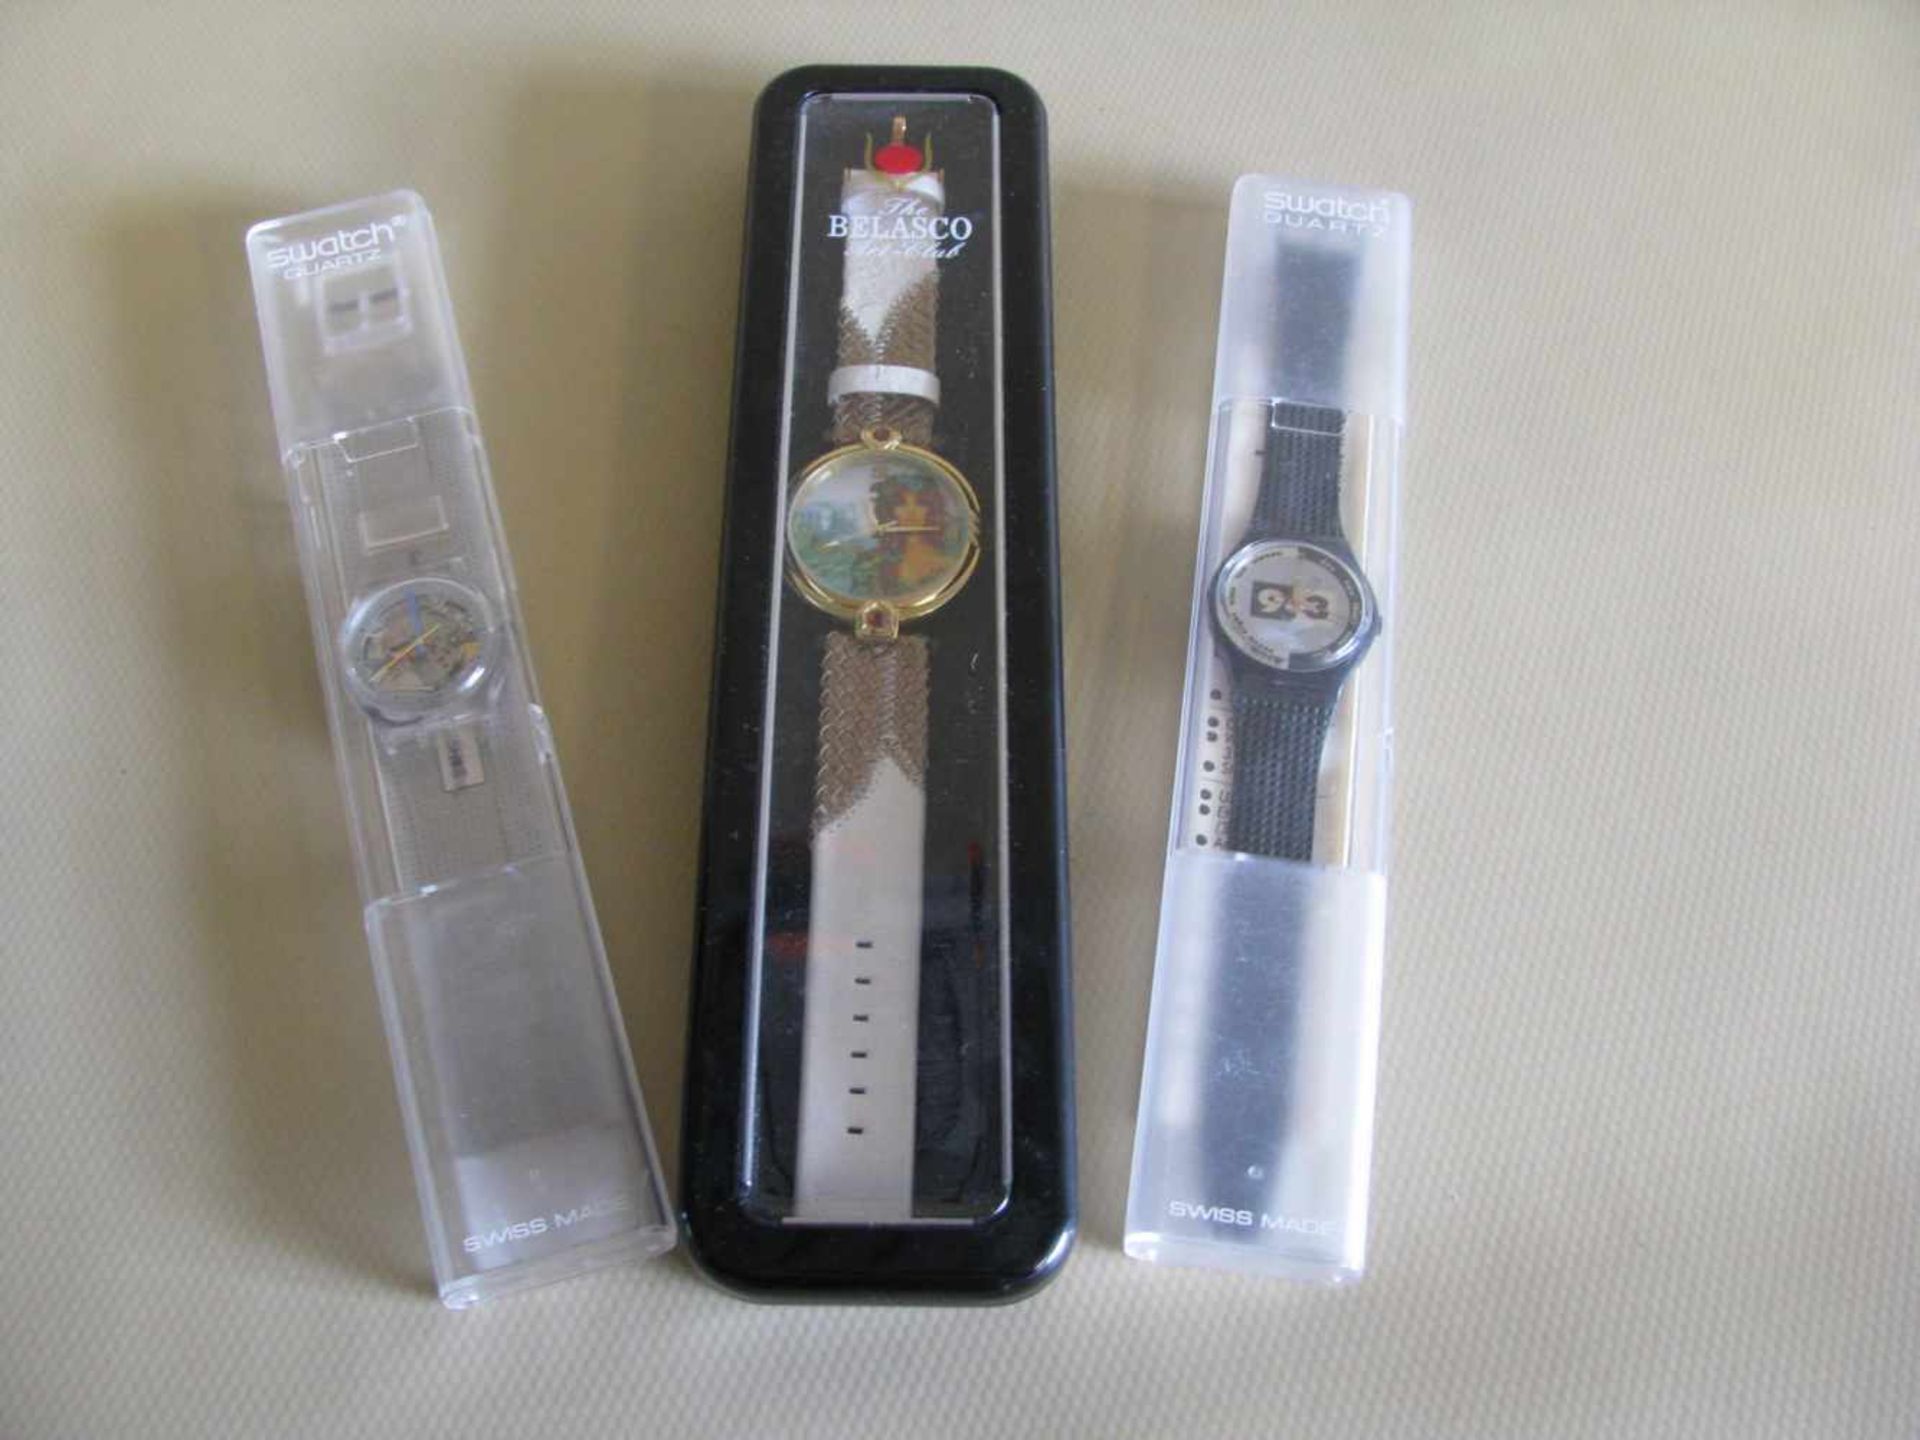 Konvolut von 3 diversen Armbanduhren, 2 x Swatch und 1 x Belasco, OVP.